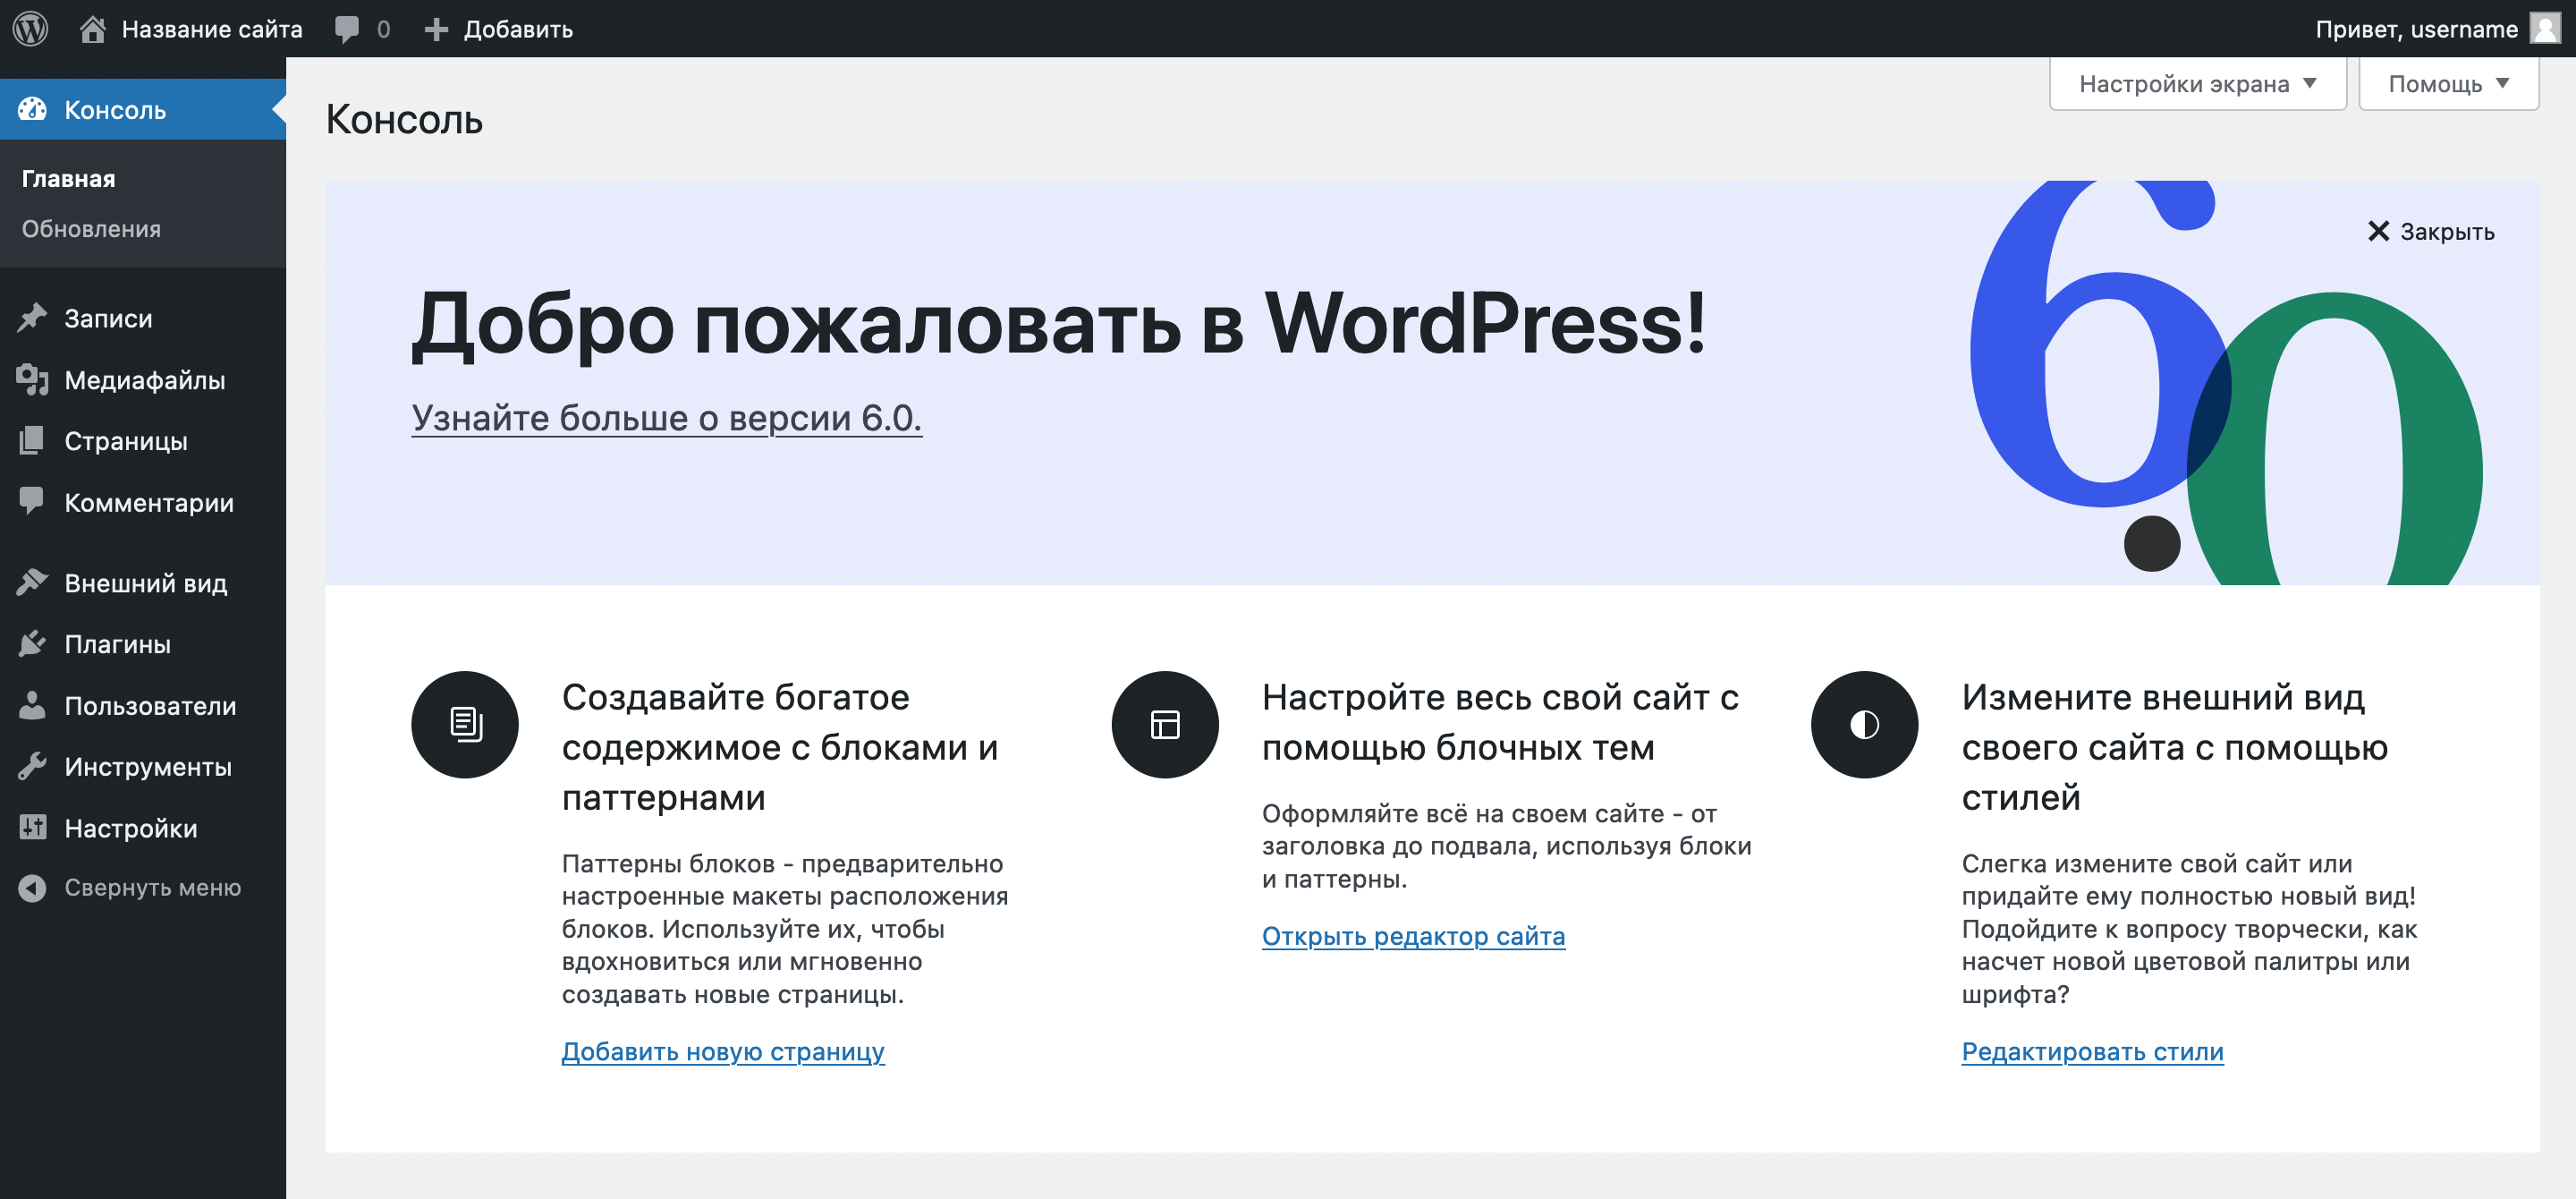 Создание сайта WordPress на локальном компьютере — Домашняя страница консоли